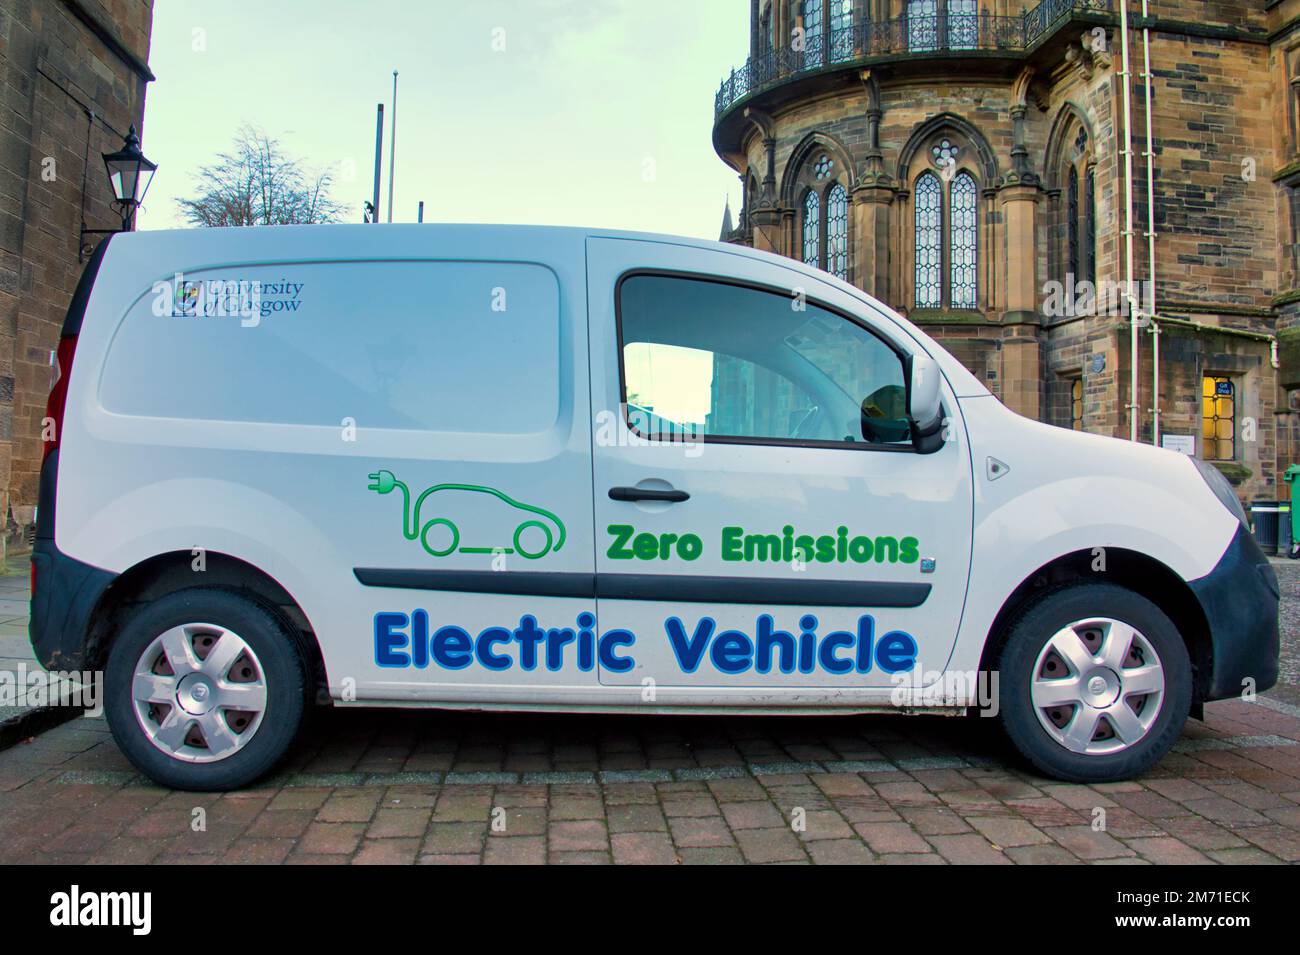 Autolavan a zero emissioni per veicoli elettrici dell'Università di Glasgow Foto Stock